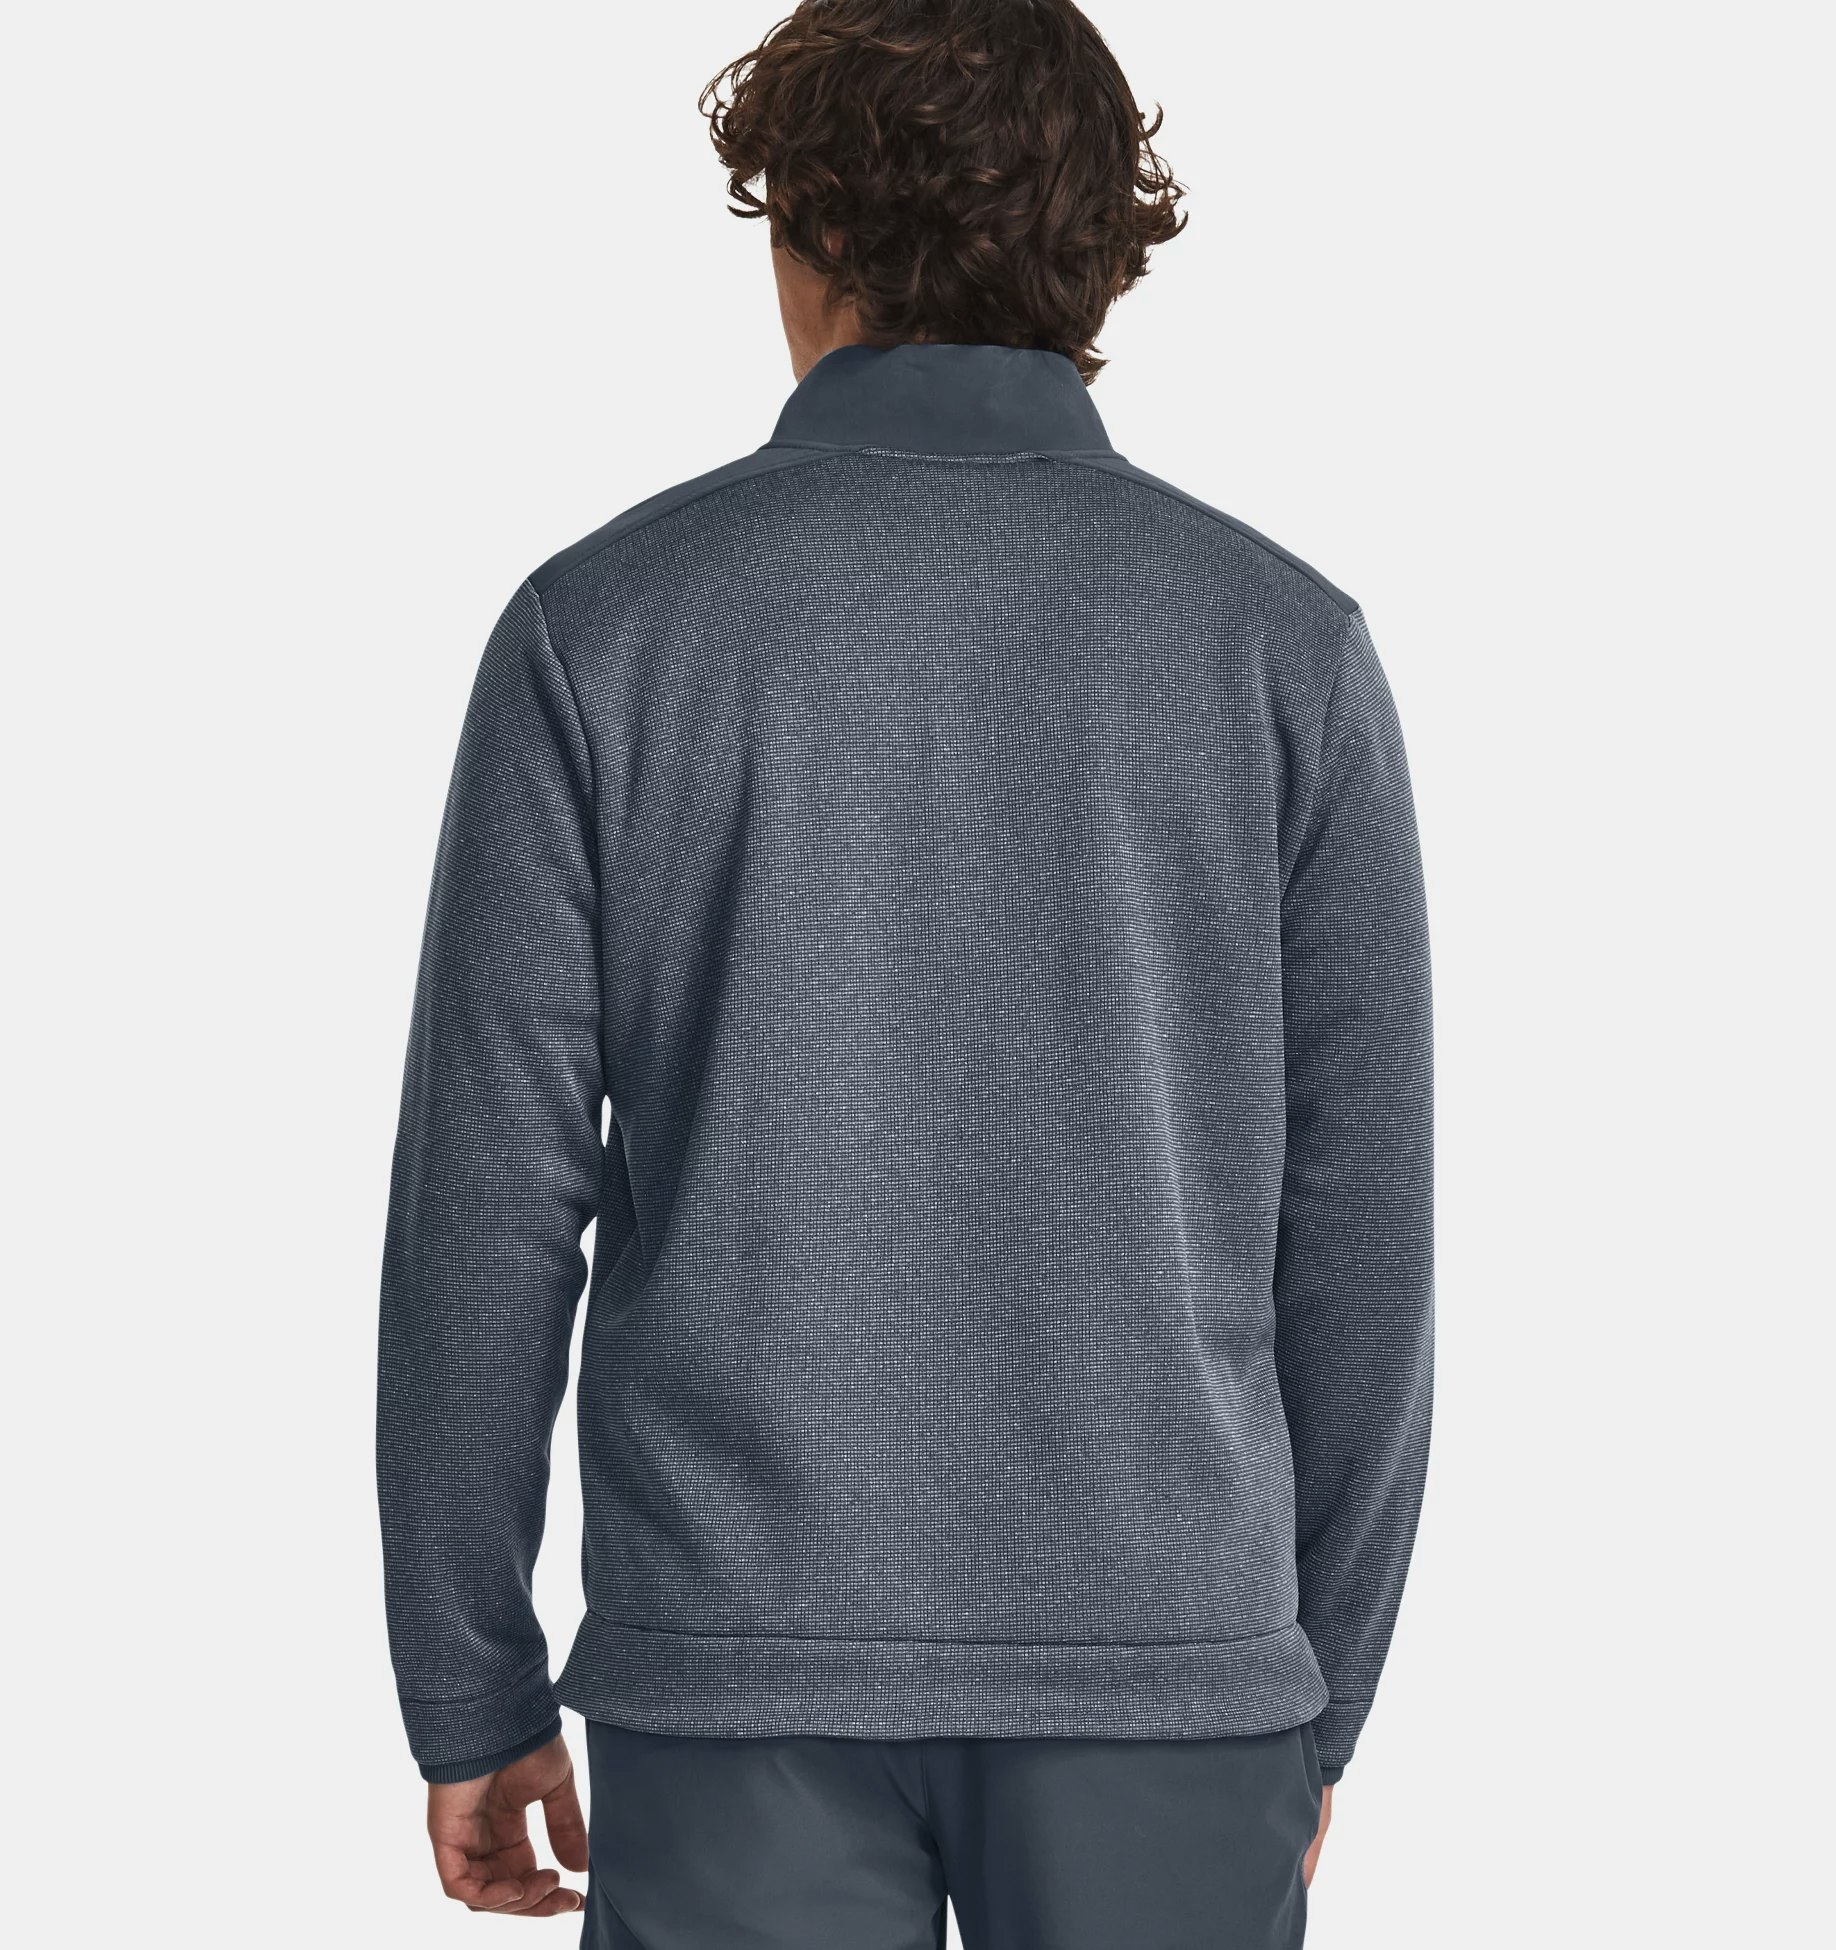 Under Armour Storm Sweater Fleece 1/2 Zip